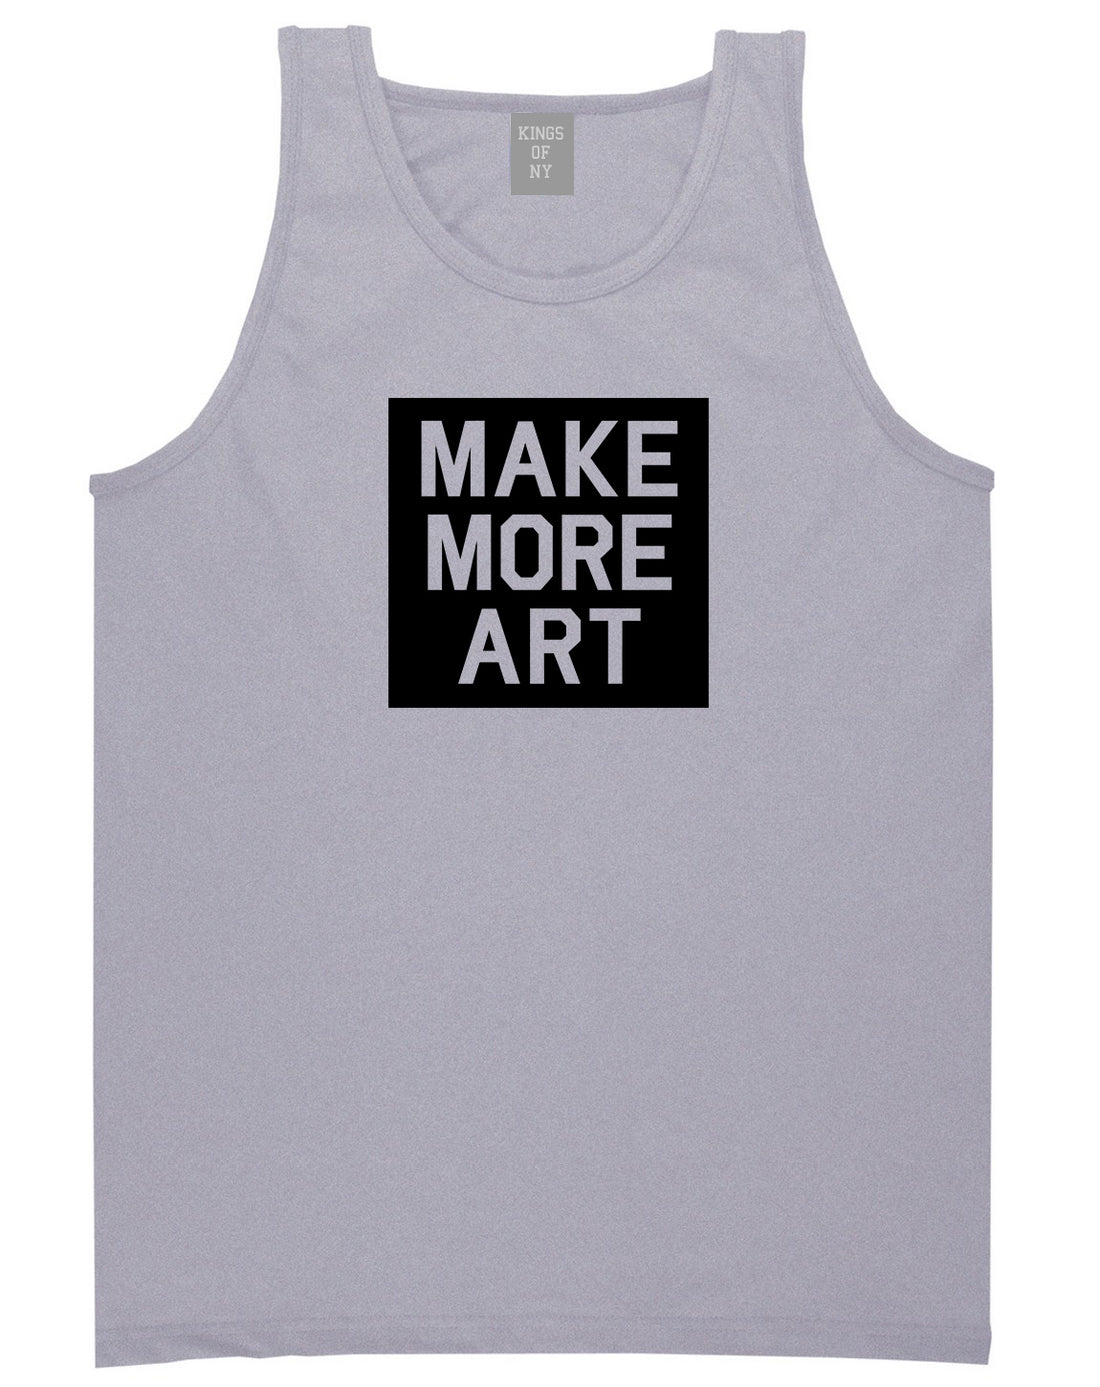 Make More Art Mens Tank Top Shirt Grey by Kings Of NY